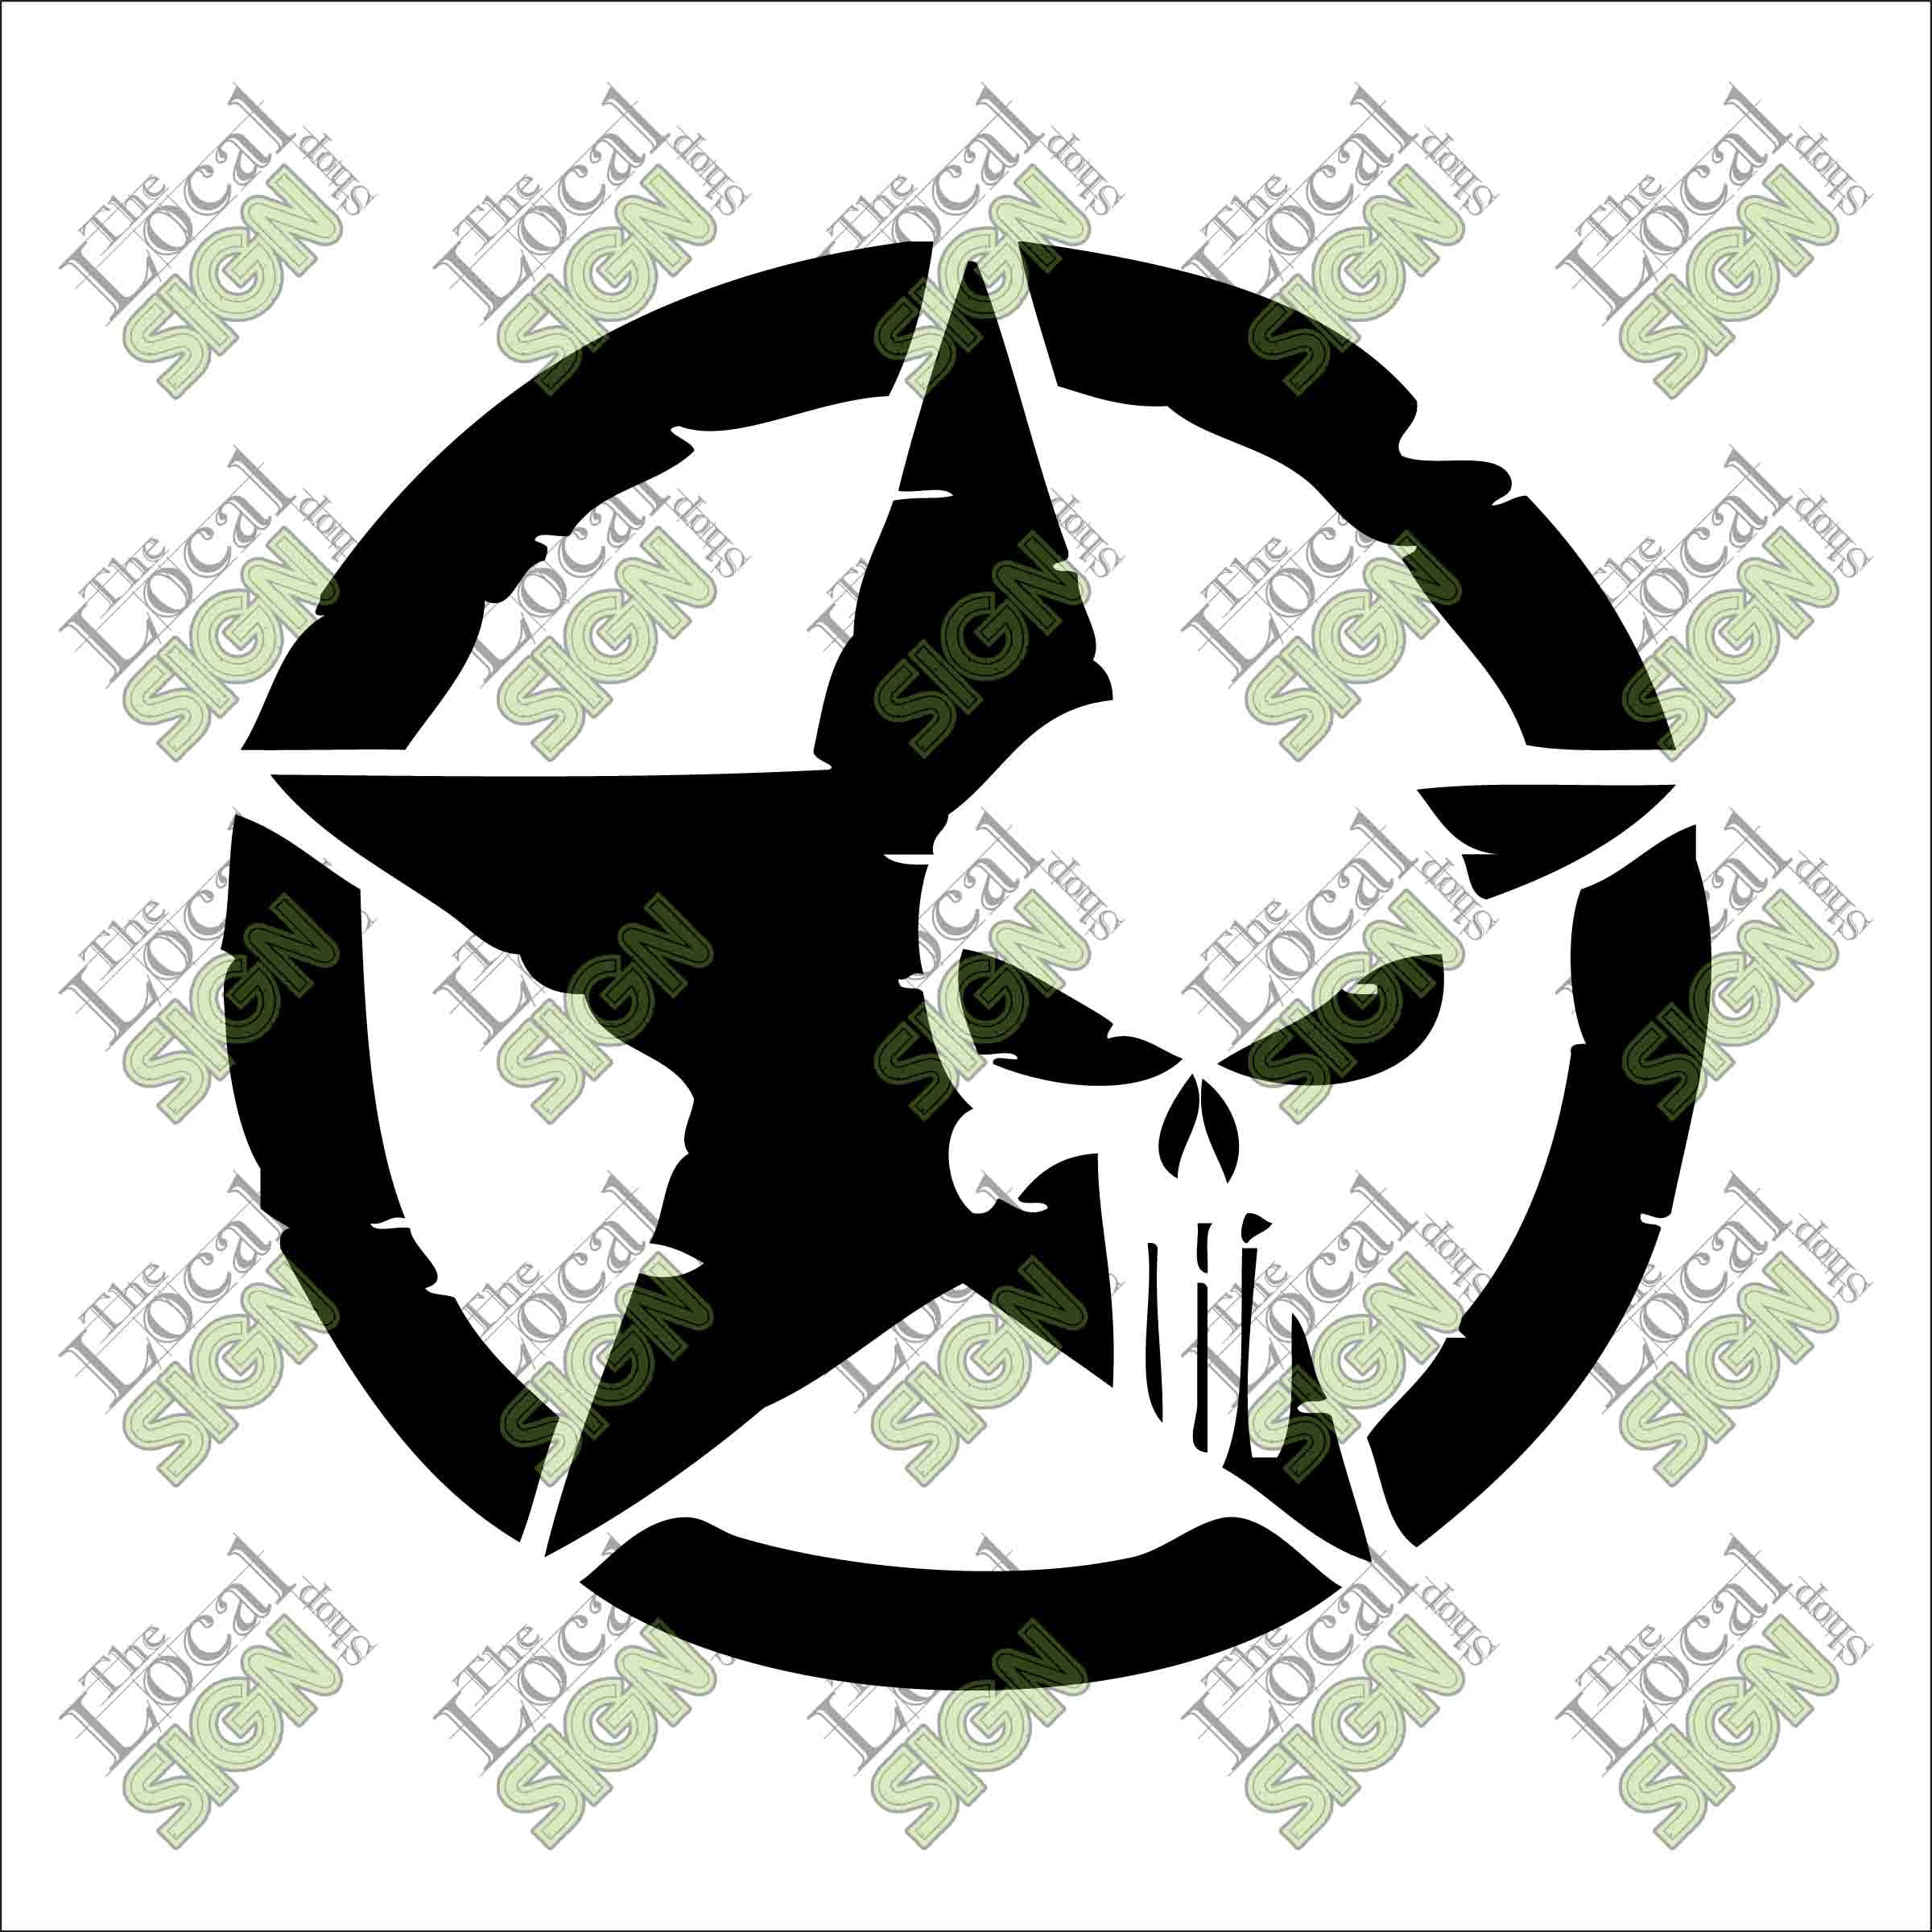 SALE! Punisher - Kansas City Chiefs decals & stickers online - 10% OFF